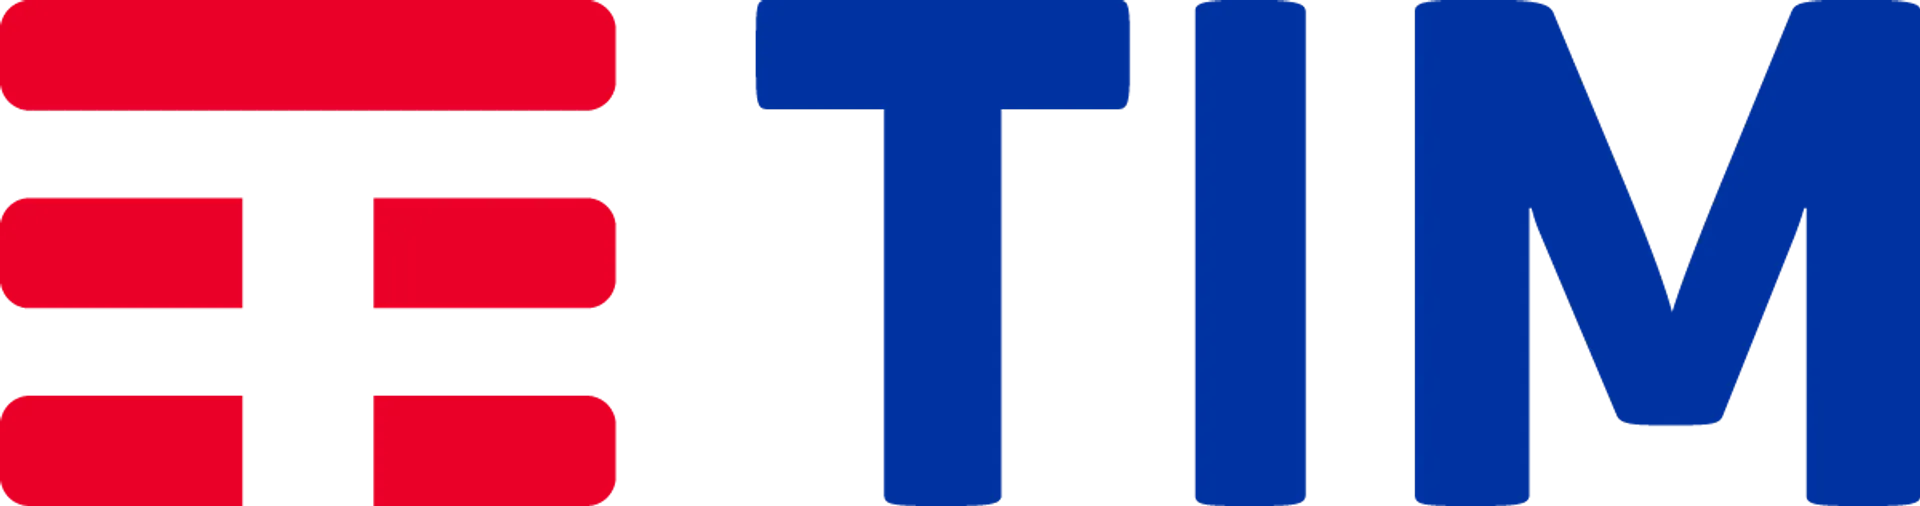 TIM logo del volantino attuale